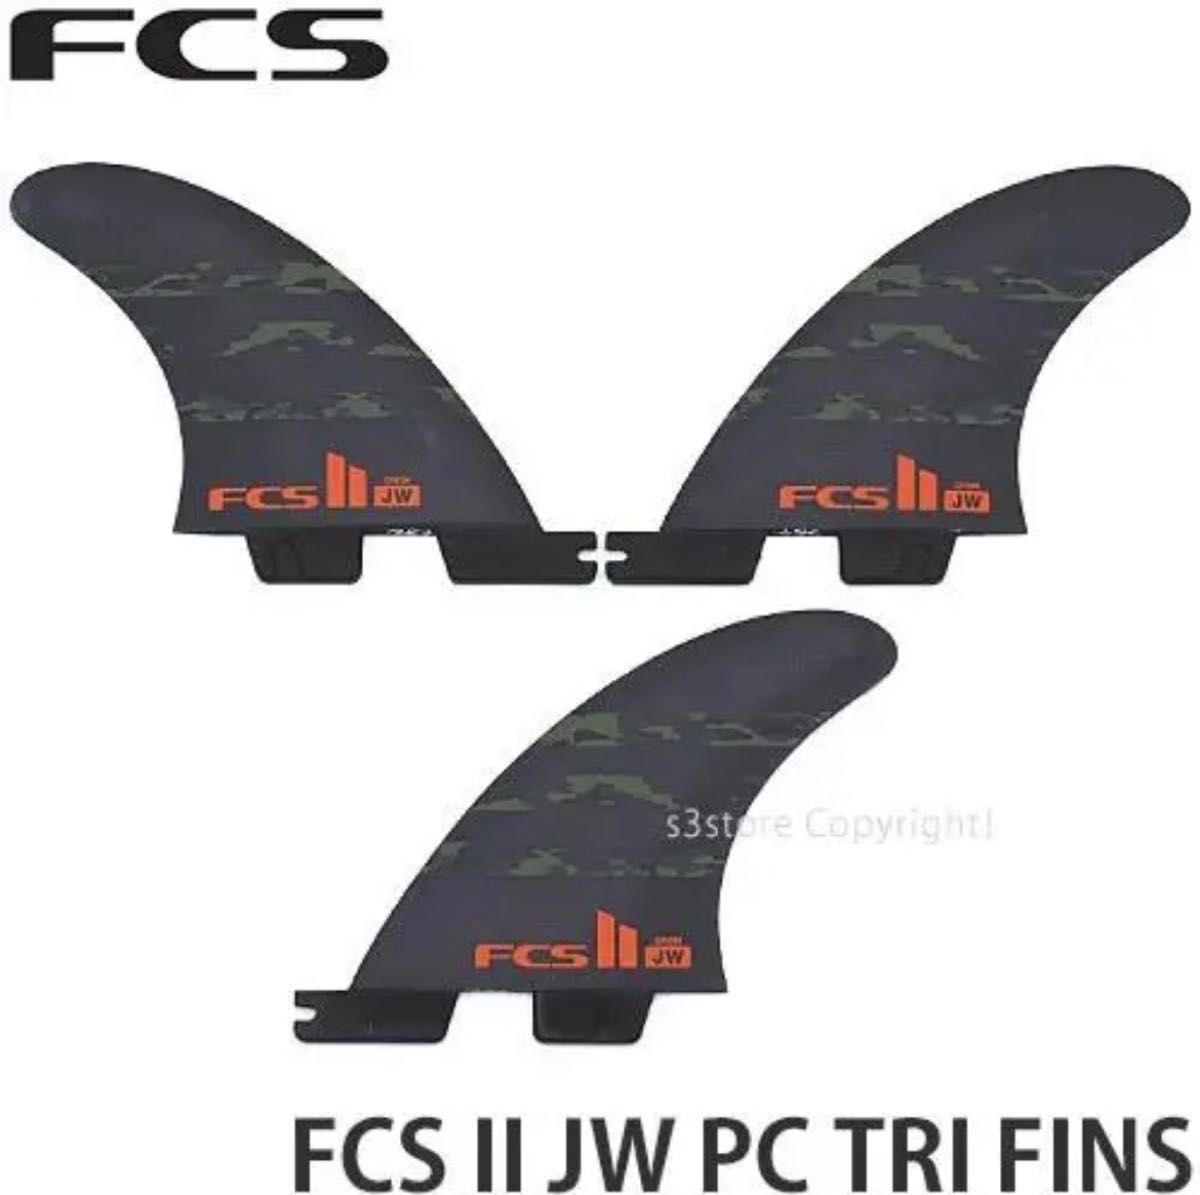 FCS2フィン M ジュリアン・ウィルソン PC AIR CORE 3本セット